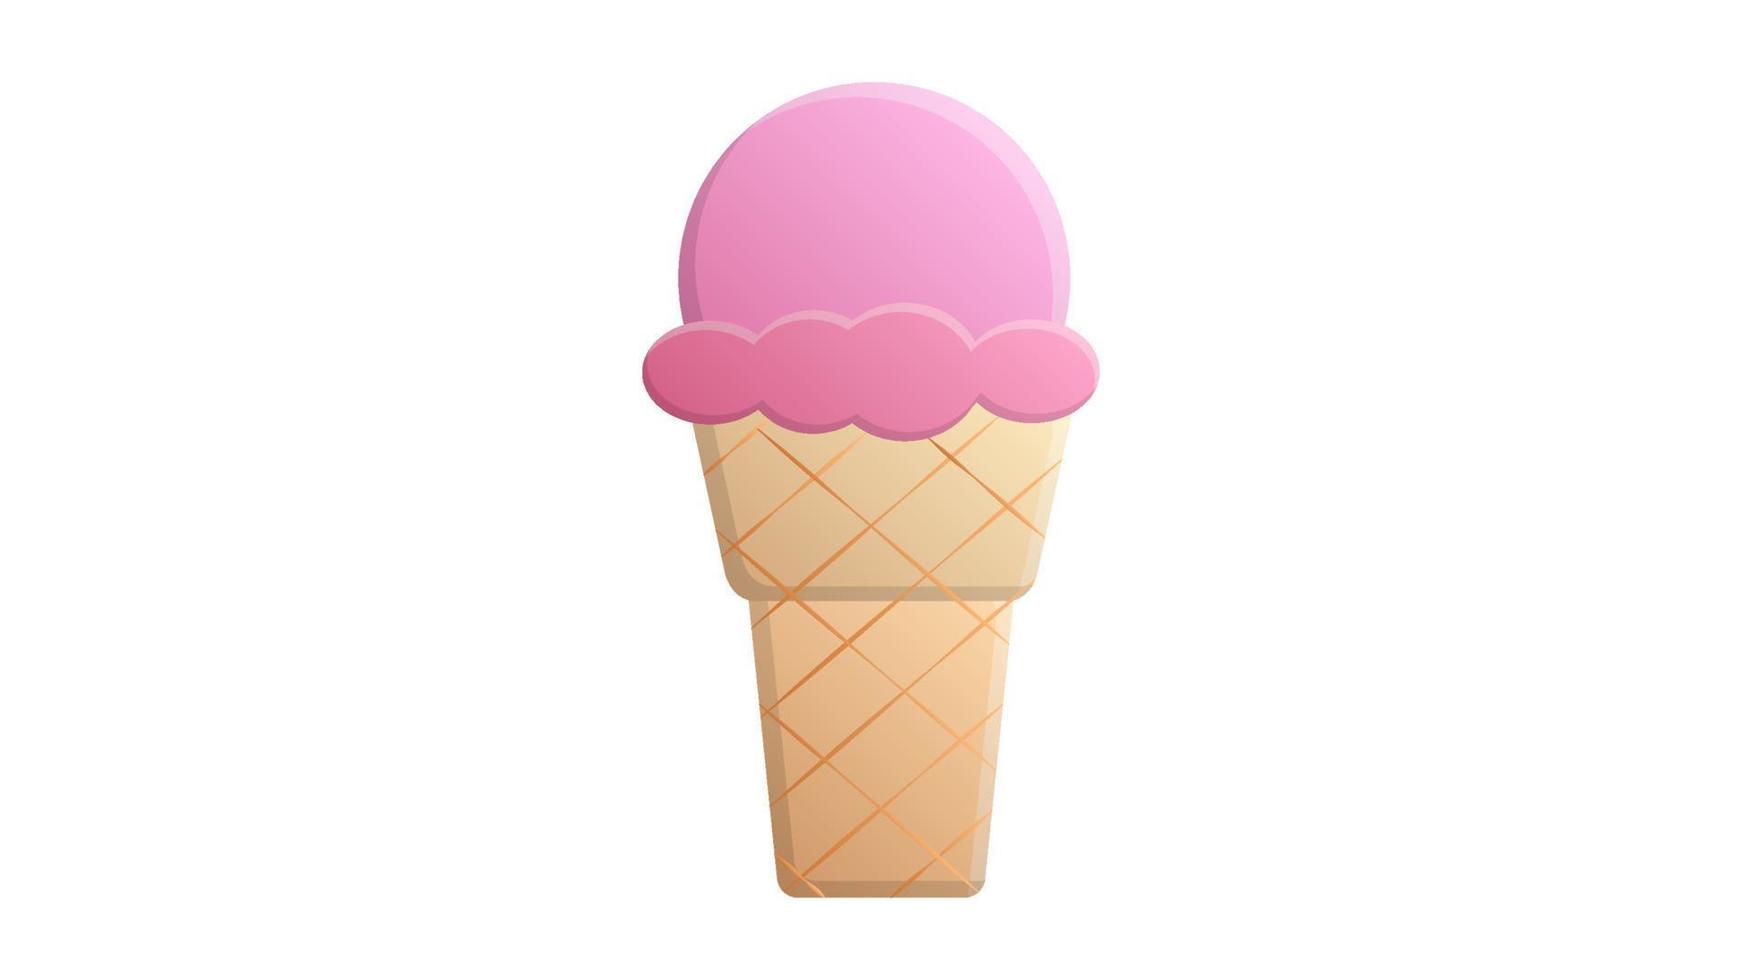 Eis in einer rosafarbenen Kugel in einem braunen Waffelbecher auf weißem Hintergrund, Vektorillustration. süße leckere Desserts. Fast Food, ein schneller Snack in der Hitze. schnelle kohlenhydrate, junk food vektor